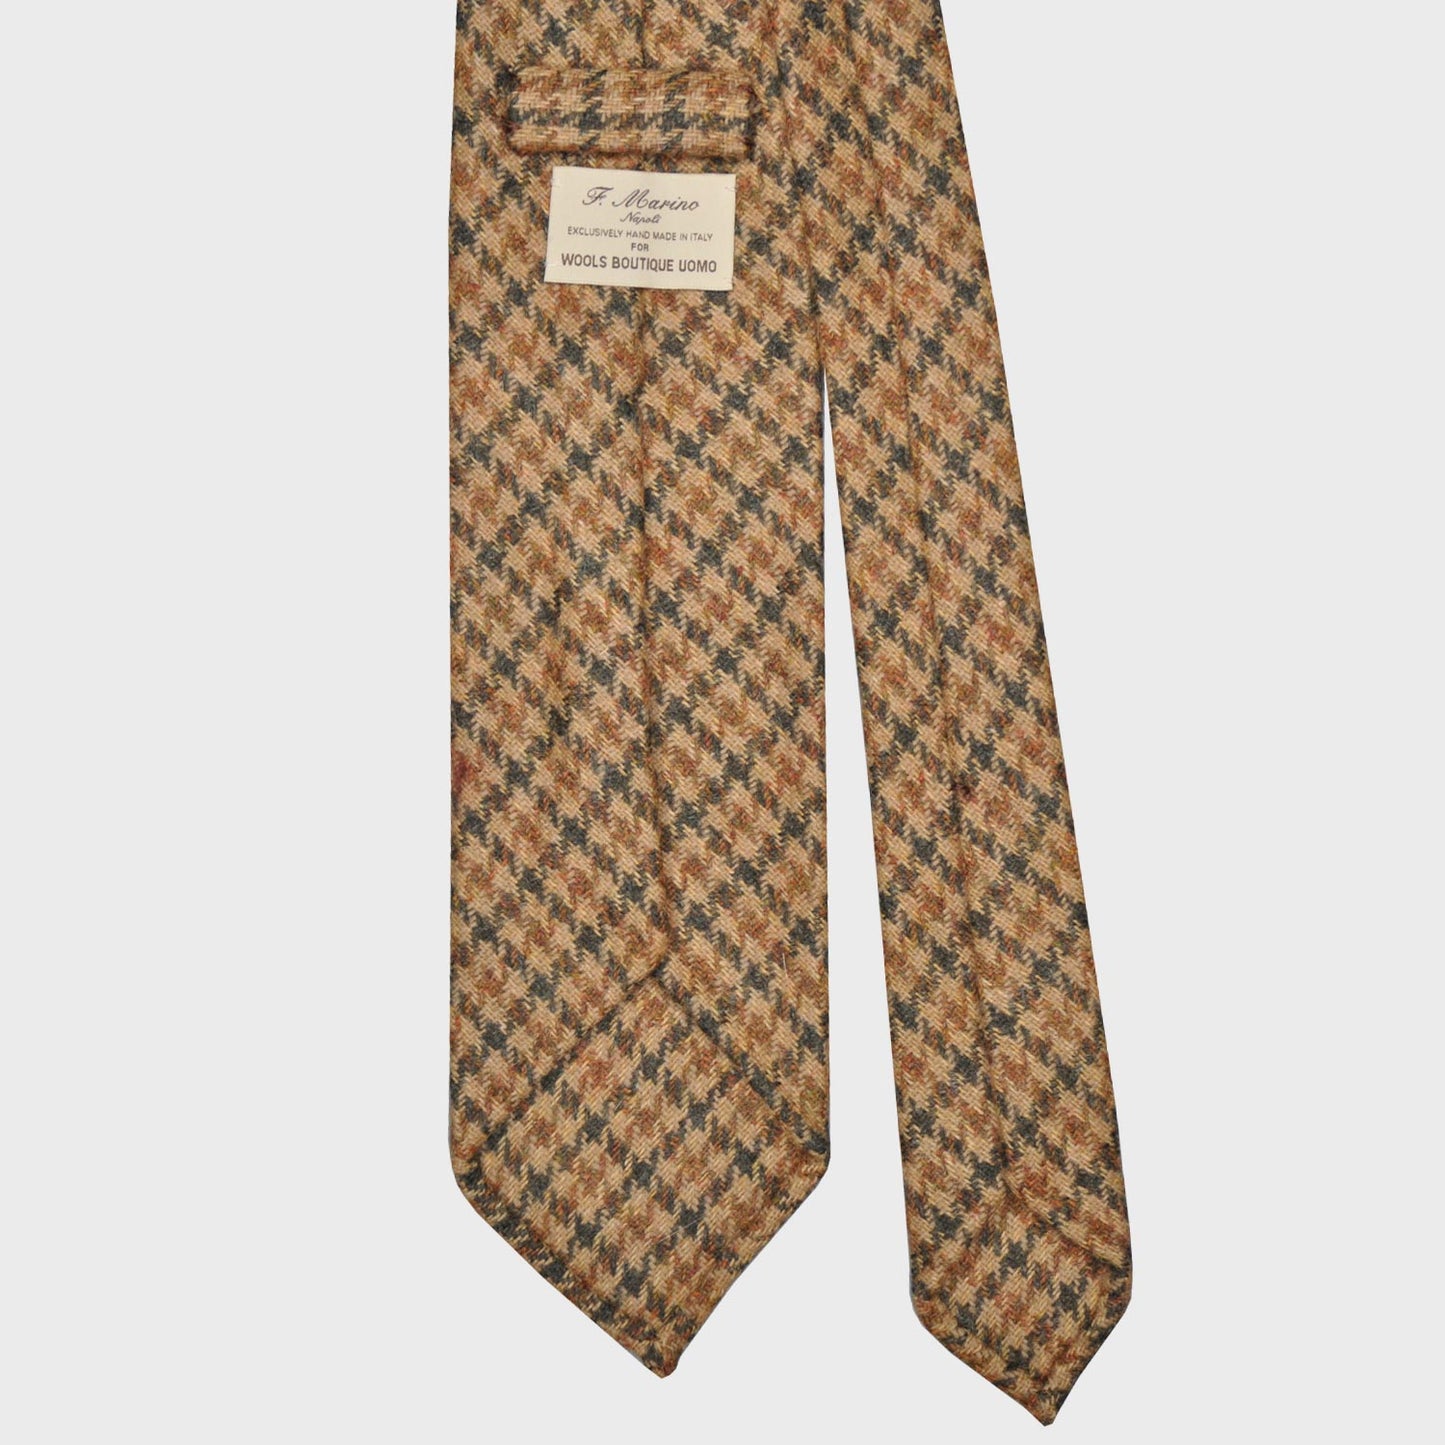 F.Marino Pied de Poule Tweed Tie 3 Folds Camel-Wools Boutique Uomo